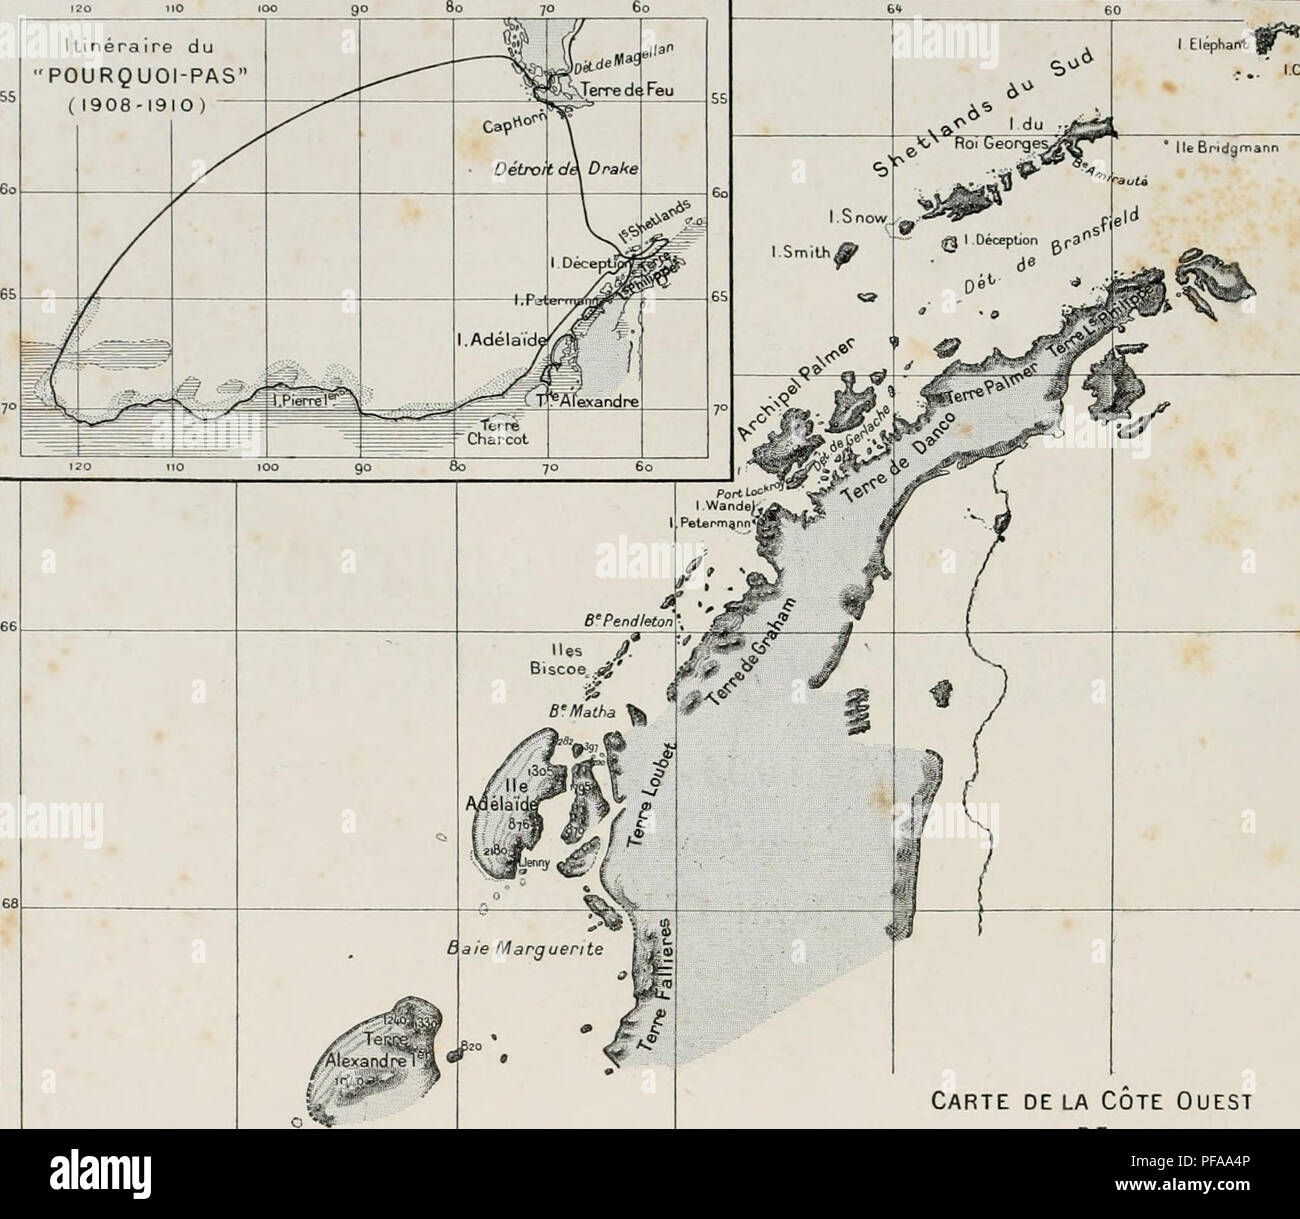 . Deuxième expédition antarctique francaise (1908-1910). Natural history -- Antarctica; Scientific expeditions -- Antarctica; Antarctica. Itinéraire du &quot;POURQUOI-PAS&quot; ( 1908-1910) rcfatlcot. Carte de la Cote Ouest DE L' ANTARCTIDE SUD-AMÉRICAINE r^^c'^E^a c&lt;j{ CARTE DES REGIONS PARCOURUES ET RELEVÉES PAR L'EXPÉDITION MEMBRES DE UETAT-MAJOR DU &quot; POURQUOI PAS ? &quot; J.-B. CHARCOT M. BONGRAIN Hydrographie, Sismographie, Gravitation terrestre, Observations astronomiques. L. Gain Zoologie (Spongiaires, EcbinotJermes, Arthropodes, Oiseaux el leurs parasites), Plankton, Botanique. Stock Photo